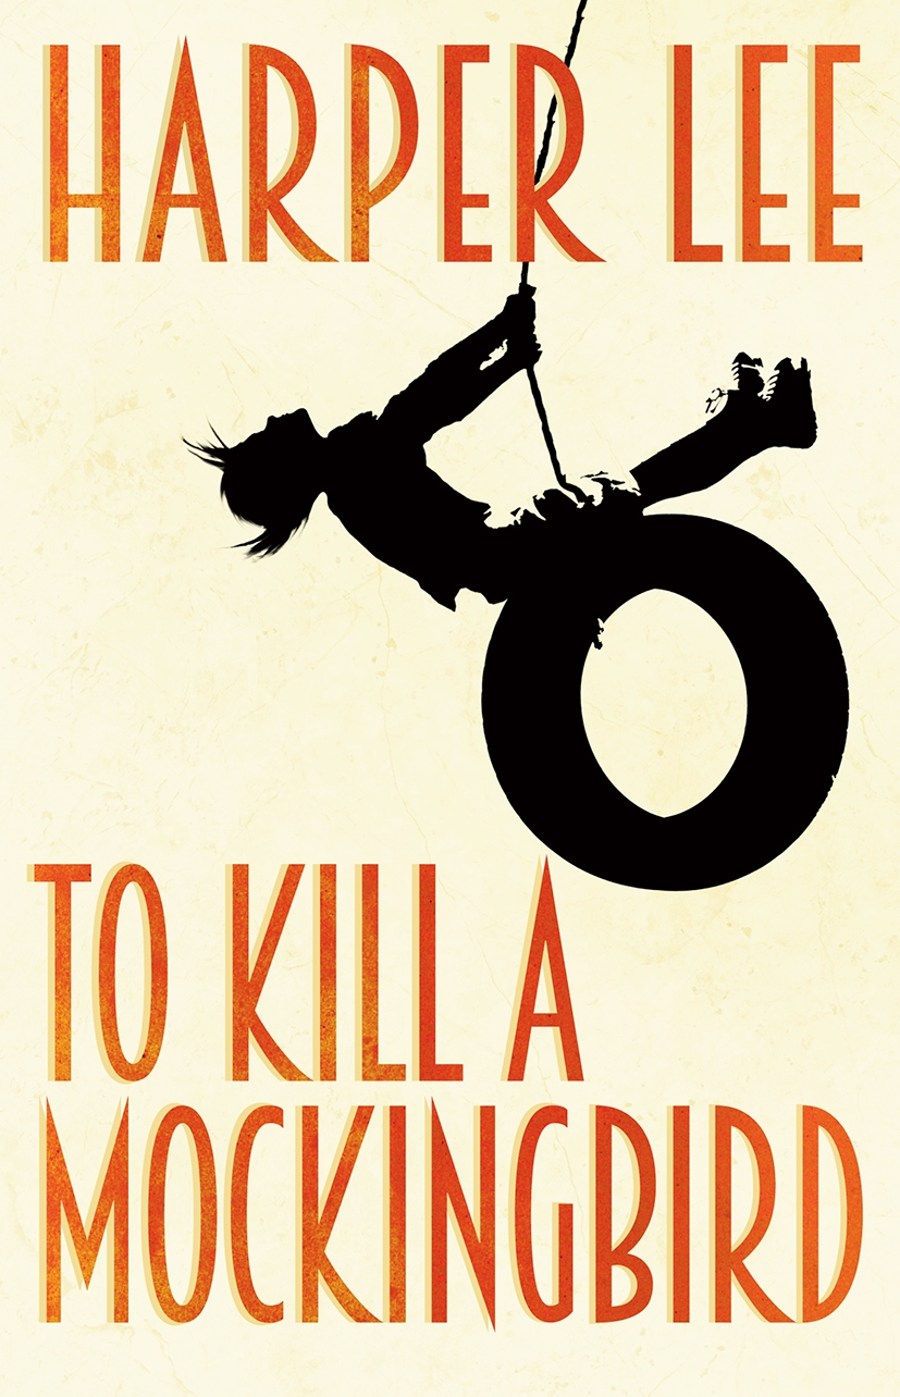 Kill a mockingbird